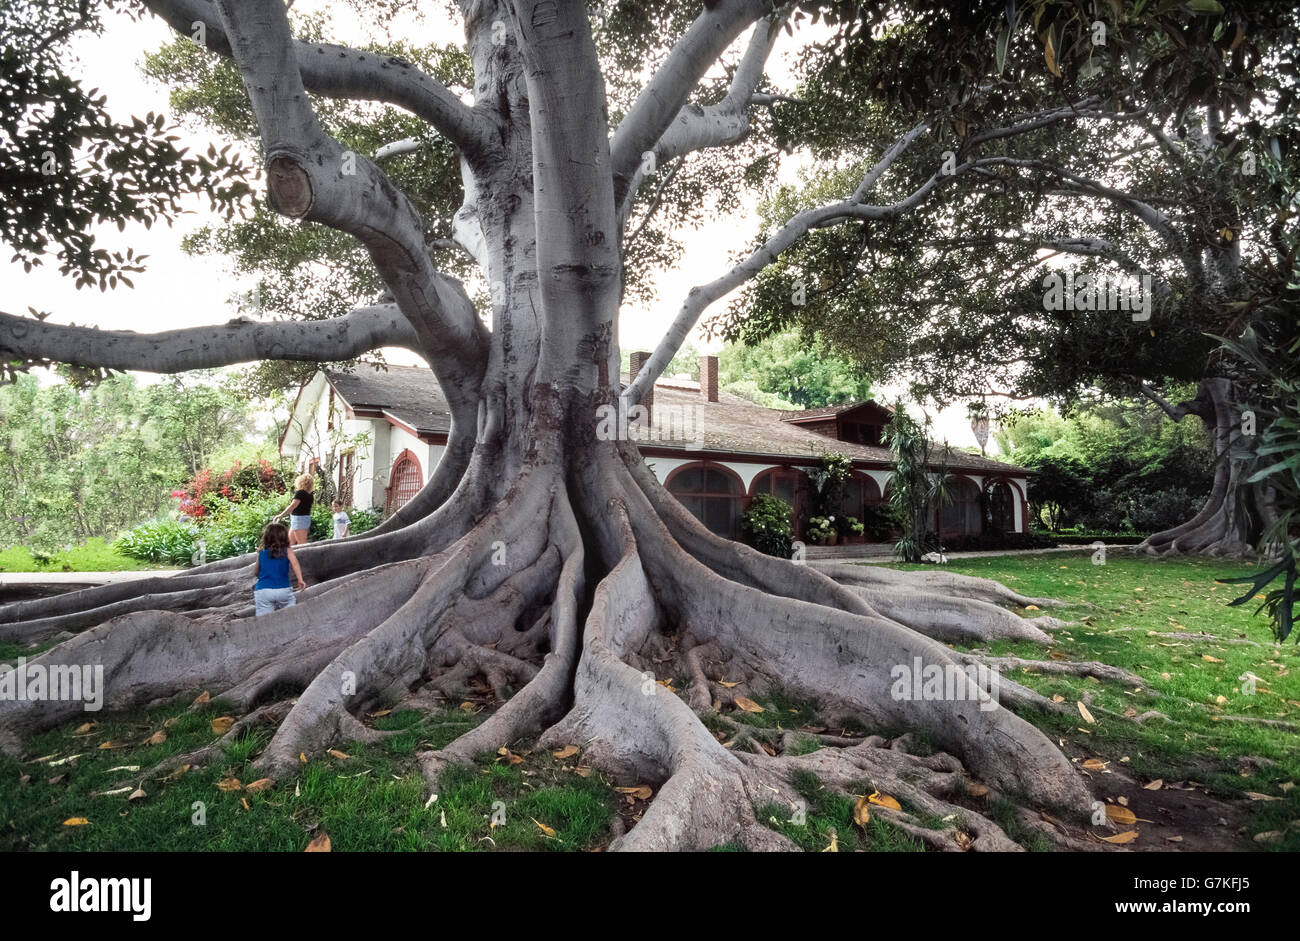 Massive, tordus et racines agressives d'identifier facilement la baie de Moreton figuier (Ficus macrophylla), qui est également connu comme un arbre banyan et le plus commun le long de la côte orientale de l'Australie où se trouve la baie de Moreton. Ces arbres ont des racines peu profondes racines contrefort appelé parce qu'ils se propagent de garder l'arbre de basculer. Les racines de grande envergure aussi à l'arbre pour obtenir plus d'éléments nutritifs du sol. Ce vieux figuier spécimen a été photographié à Rancho Los Alamitos Historic Ranch et jardins à Long Beach, Californie, USA. Banque D'Images